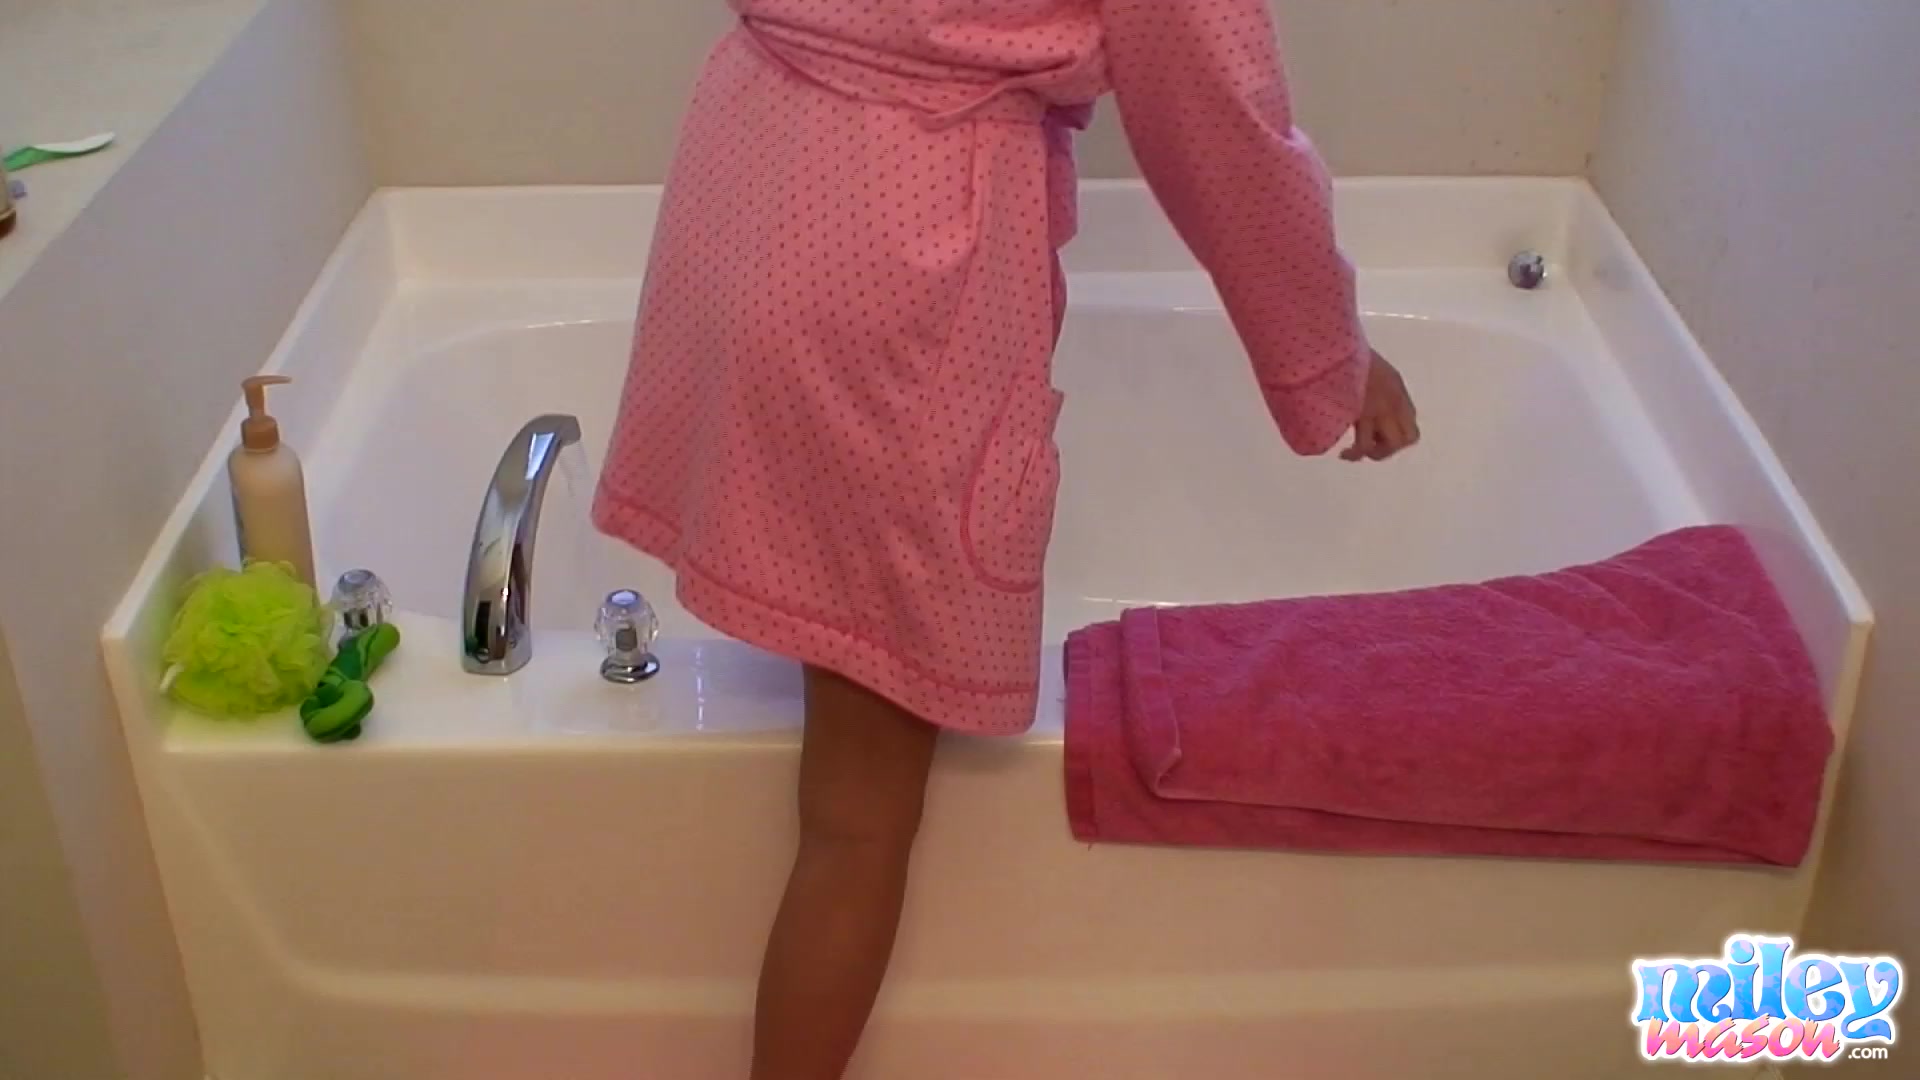 MileyMason - Getting freaky with my bath toys